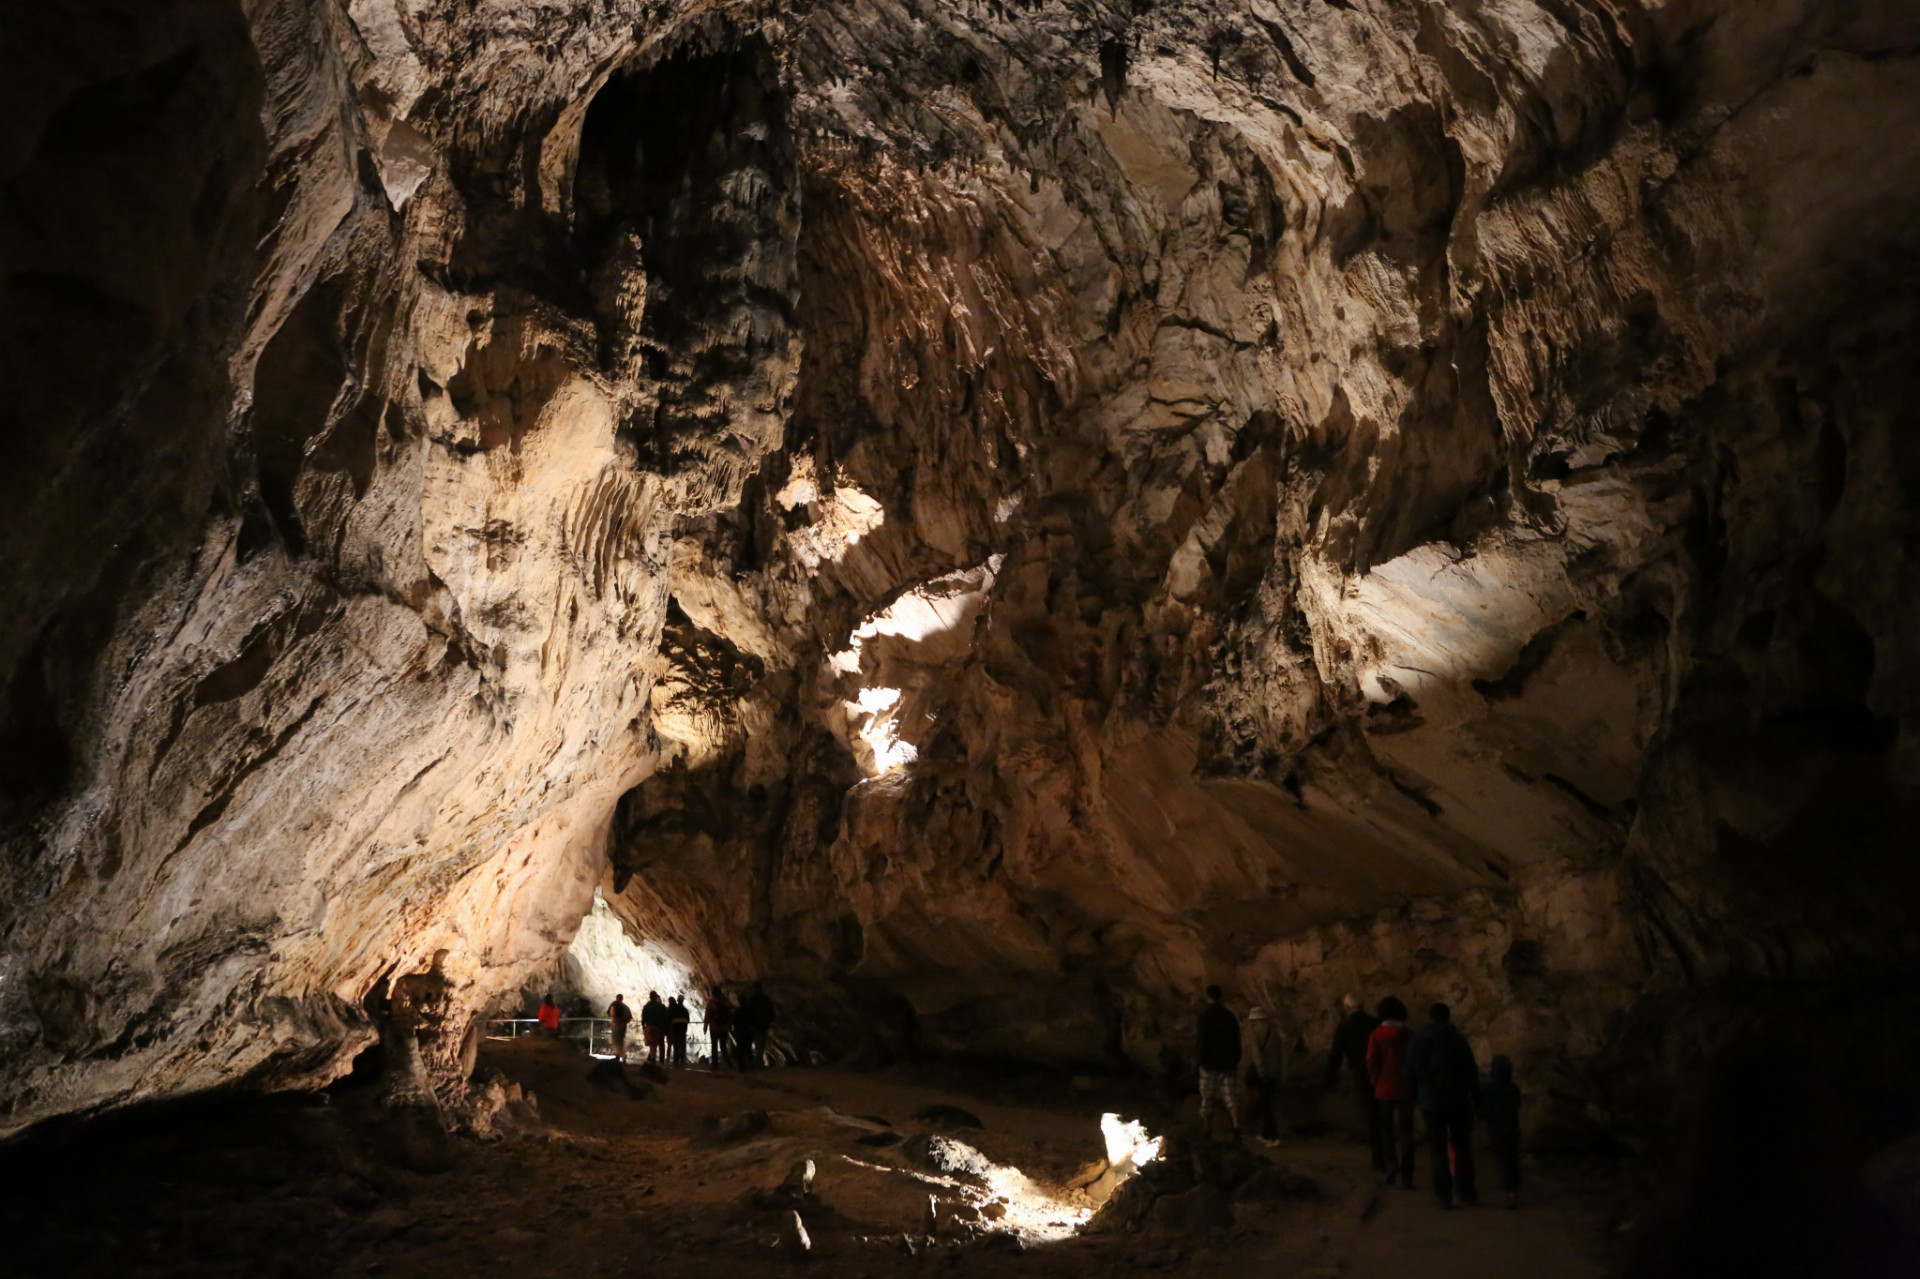 Demänovská ľadová jaskyňa predstavuje severnú časť svetoznámych Demänovských jaskýň. Pozoruhodná je výskytom trvalej ľadovej výplne, bizarnými a mohutnými tvarmi podzemných priestorov, vzácnou jaskynnou faunou, ako aj bohatou históriou.

Prehliadková trasa prechádza cez mohutné riečne chodby, poprepájané strmými úsekmi. Prvá časť trasy vedie cez jaskynné priestory so sintrovou výzdobou, druhá časť cez zaľadnené priestory jaskyne.

Kombináciou sintrovej a ľadovej výzdoby vzniká veľmi zaujímavý prehliadkový okruh, na ktorom sa návštevníci môžu dozvedieť o vytváraní jaskynných priestorov, vzniku sintrovej výzdoby, o podmienkach zaľadnenia jaskyne ako aj vplyve zaľadnenia na pôvodnú sintrovú výplň. Jaskynné priestory pozostávajú z oválnych, riečne modelovaných chodieb a dómovitých priestorov dotvorených rútením a mrazovým zvetrávaním.

Prehliadkový okruh má dĺžku 650 m a prevýšenie 48 m, návštevníci však v jaskyni prejdú 800 m. Vchod a východ sú v rovnakej nadmorskej výške, vzdialenosť medzi nimi je iba 40 m. Pobyt v jaskyni trvá asi 45 min. Teplota v jaskyni počas letných mesiacov kolíše od +0,4°C do +3°C.
Vstupné: 
Dospelí: 8 eur 
Deti 6-15 rokov: 4 eurá
Študenti a osoby do 60 rokov: 7 eur